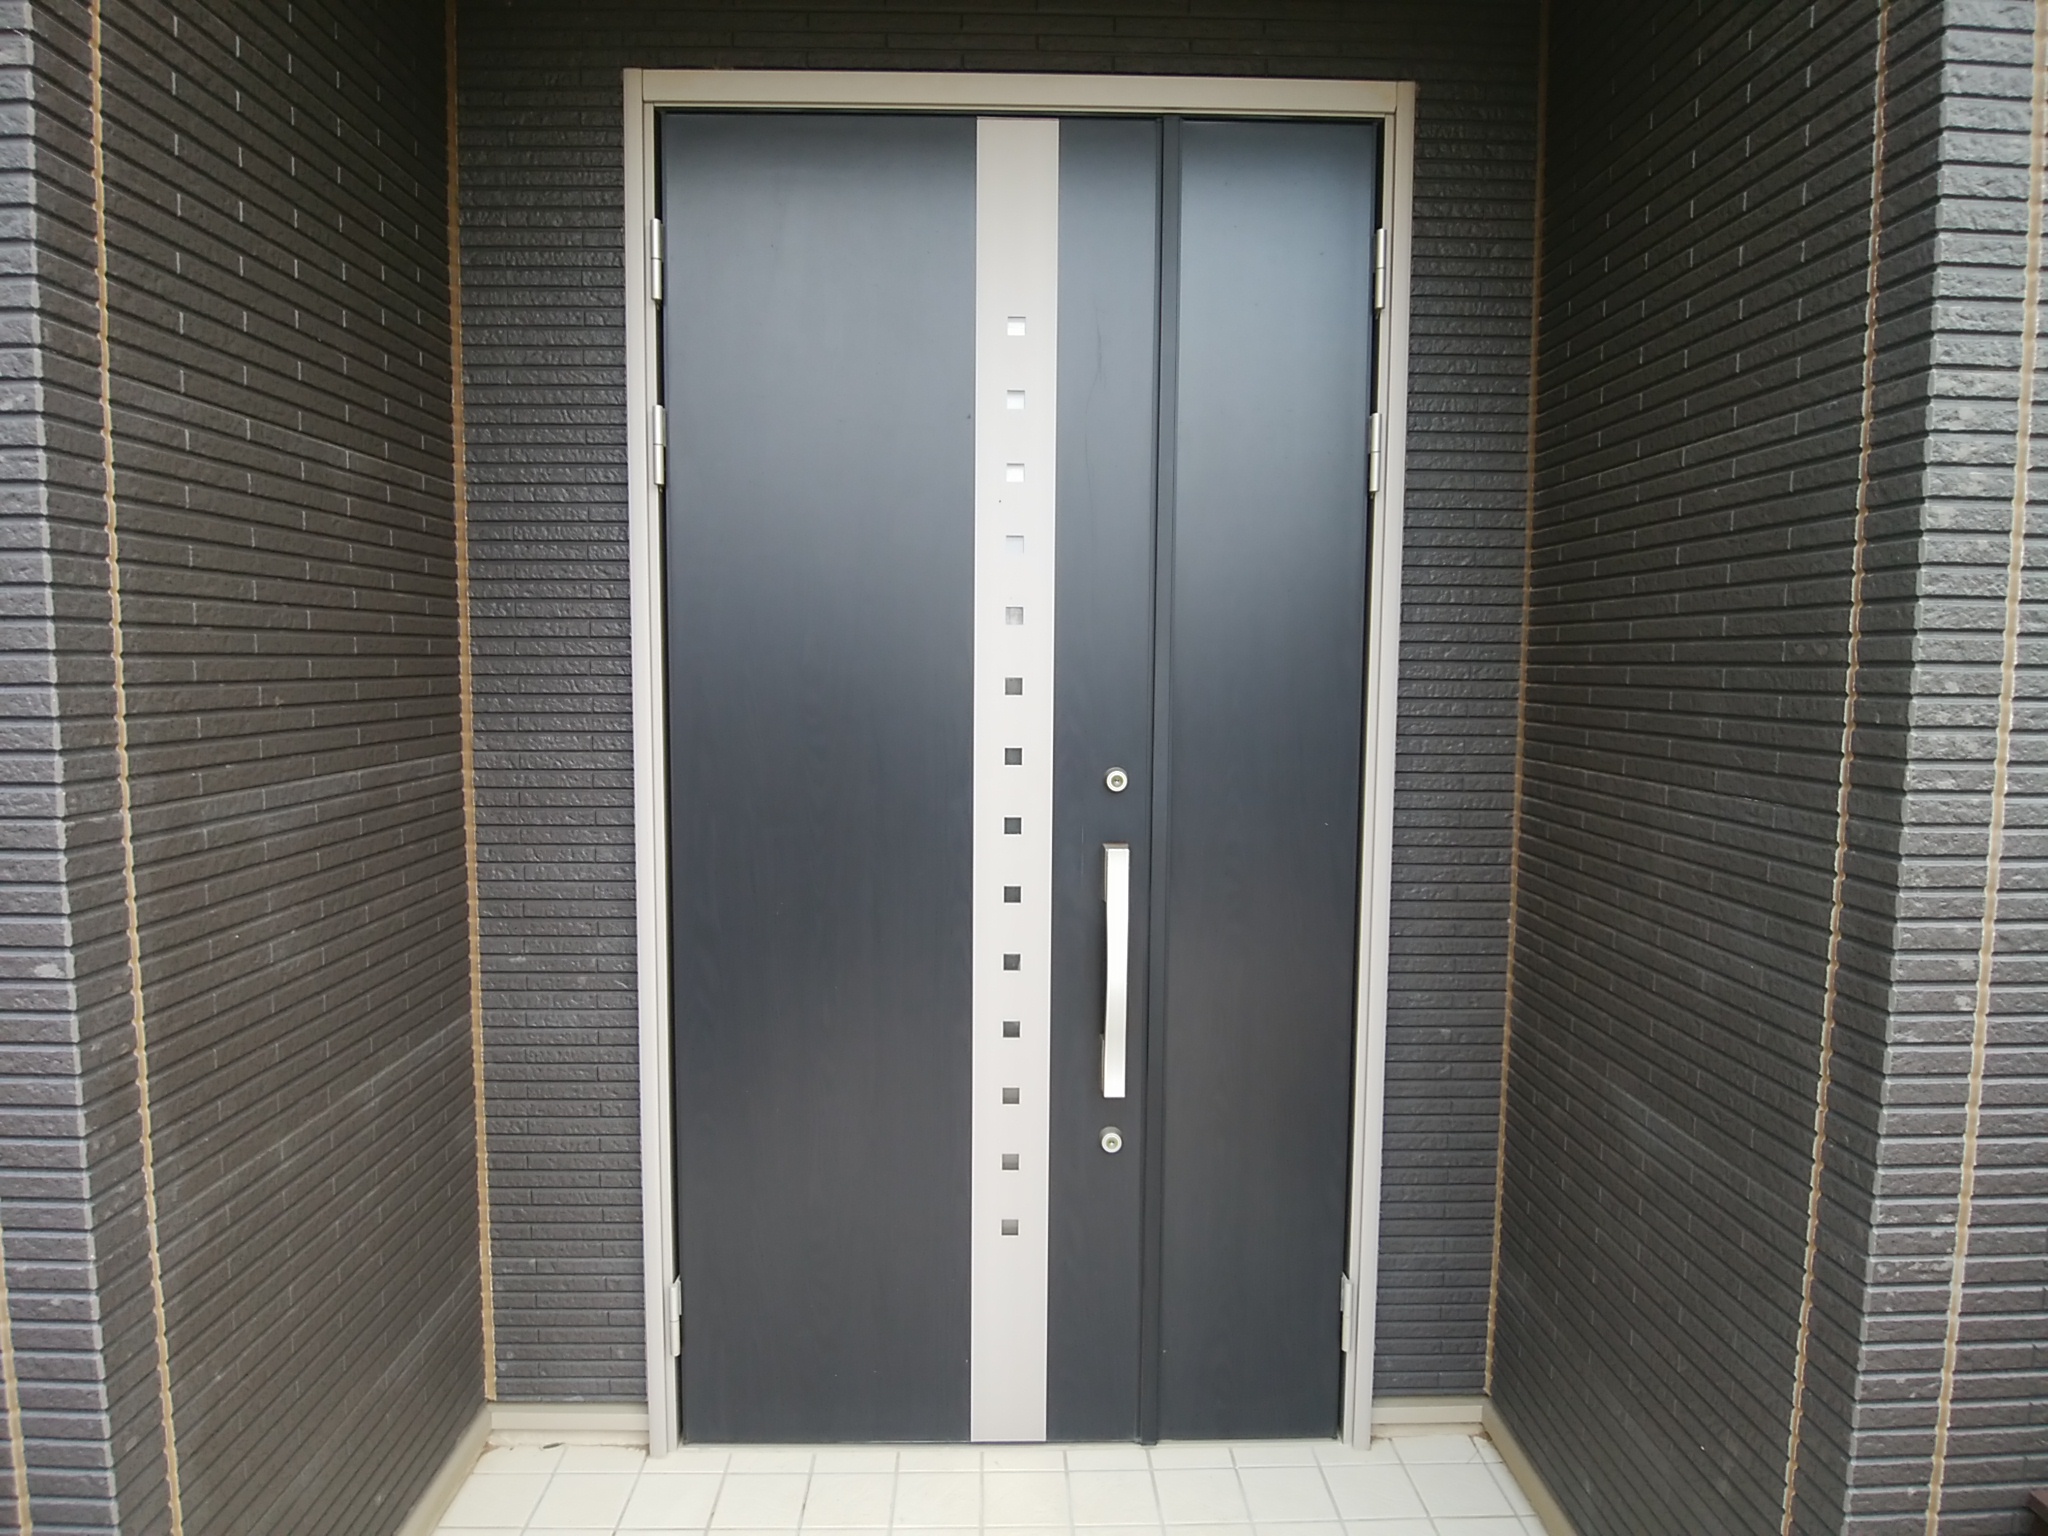 昼間でも電気を点けないと暗いドアを明るくしました 茨城県つくば市の工事事例 Lixilリシェントg型 玄関ドアのリフォームなら玄関 ドアマイスターへお任せください